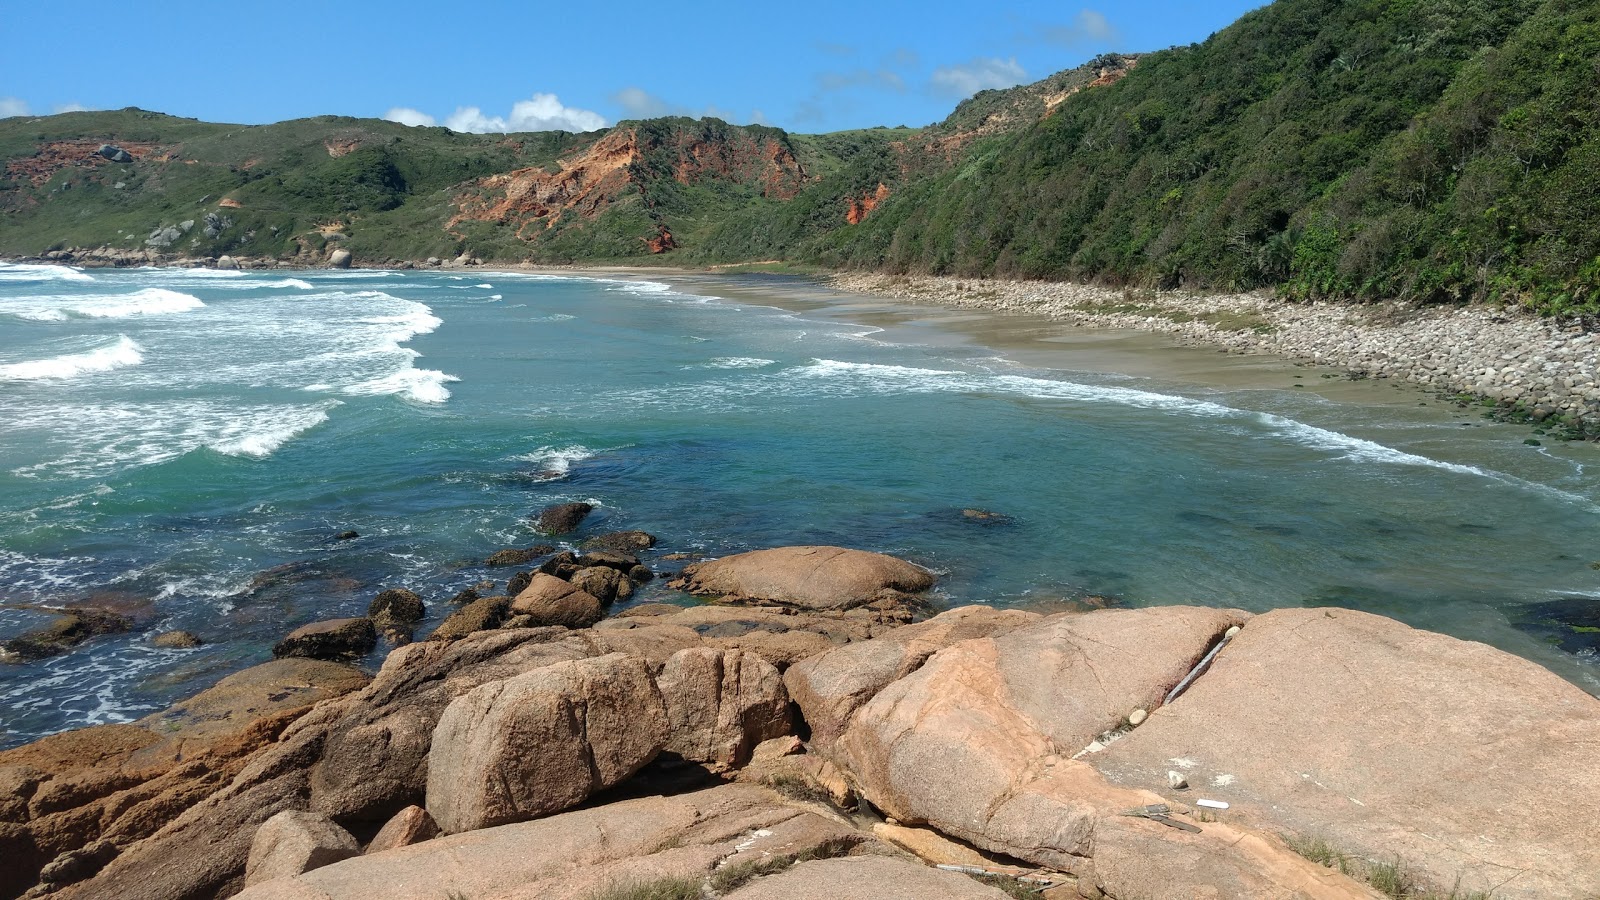 Praia D'agua'in fotoğrafı geniş ile birlikte